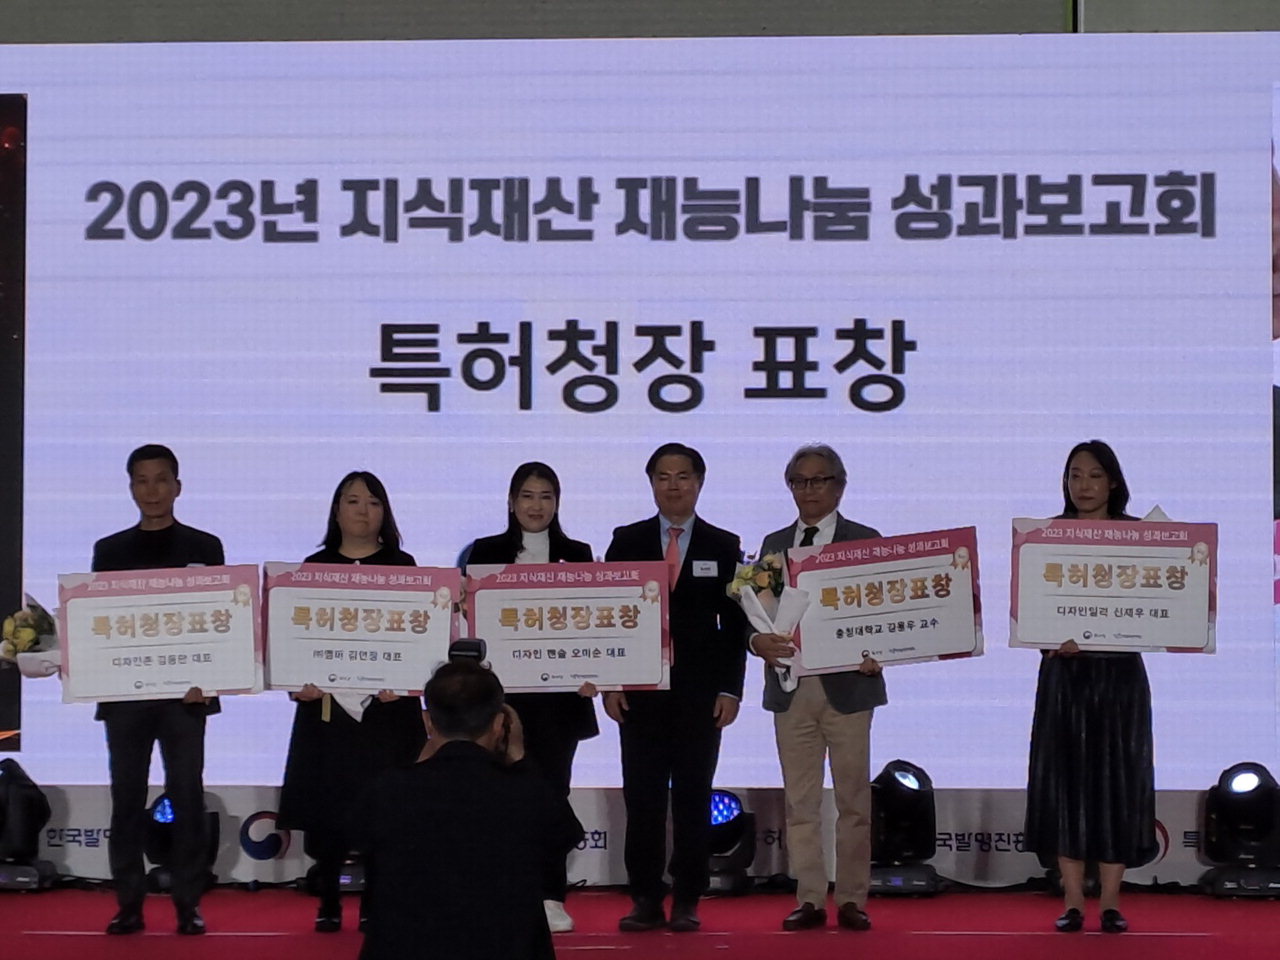 충청대 시각디자인과 김용우(오른쪽 두번째) 교수가 재능나눔 공로로 특허청장 표창을 수상했다.